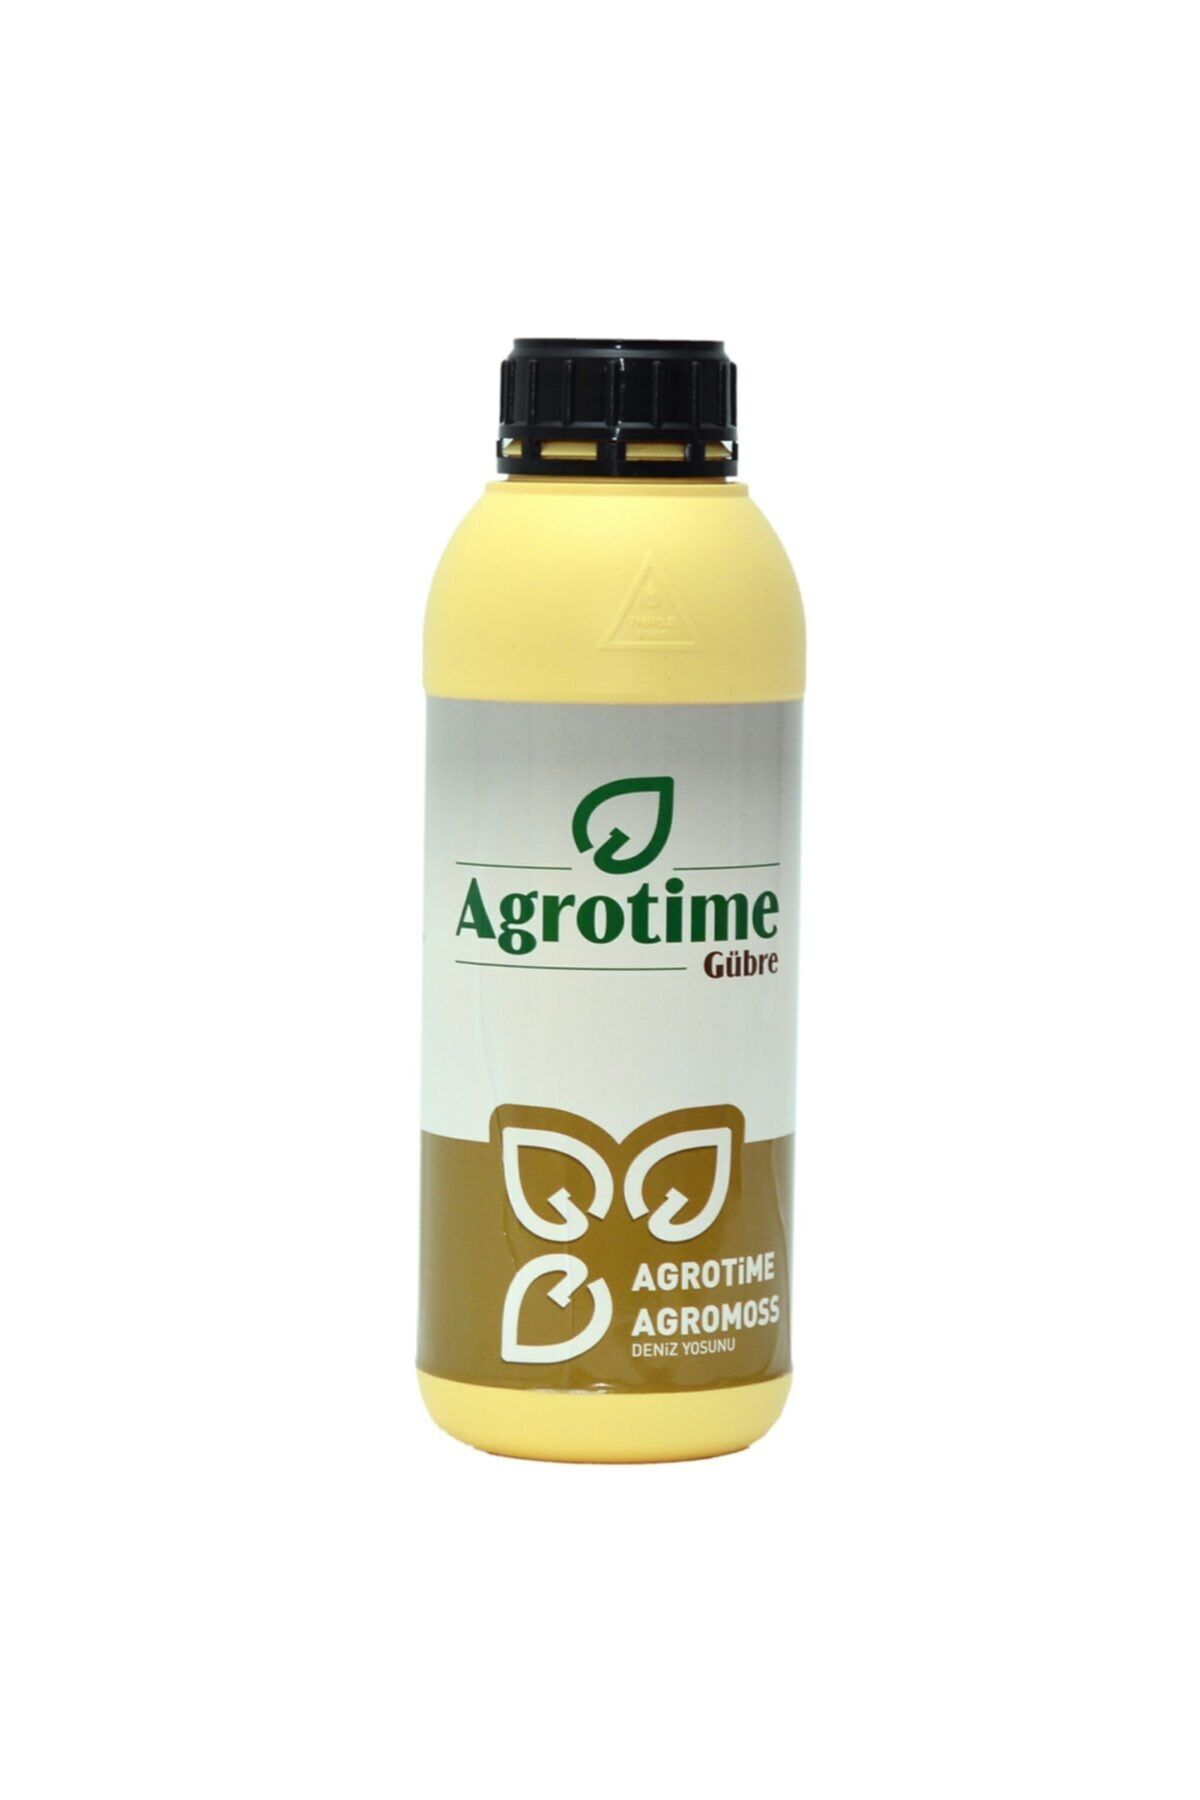 Agrotime Agrotıme- Agromoss Deniz Yosunu Katkılı Sıvı Gübre 1 Lt